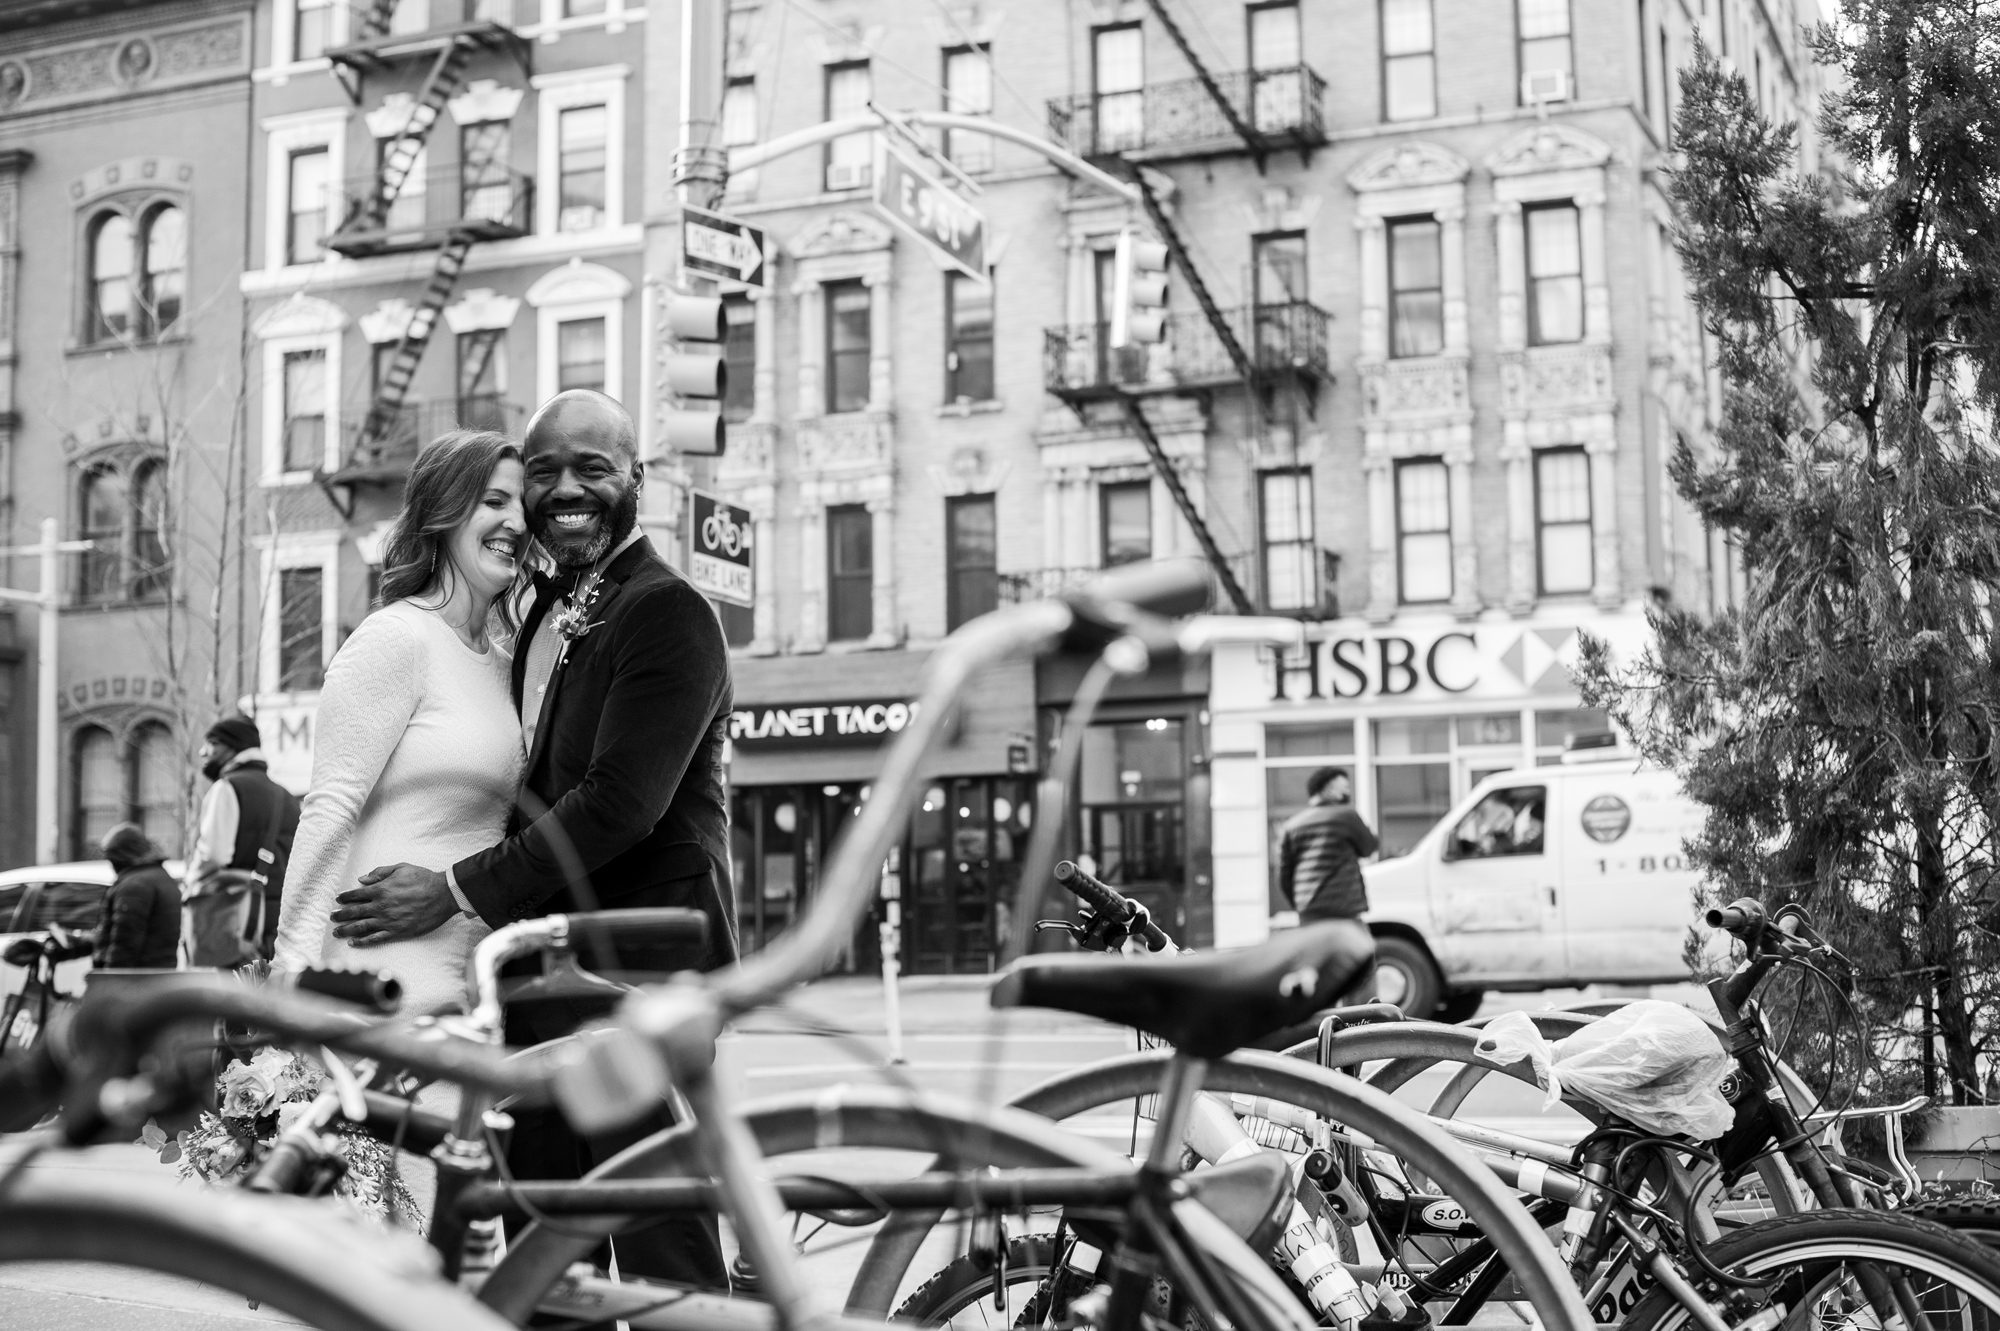 Wedding Photos with Bikes